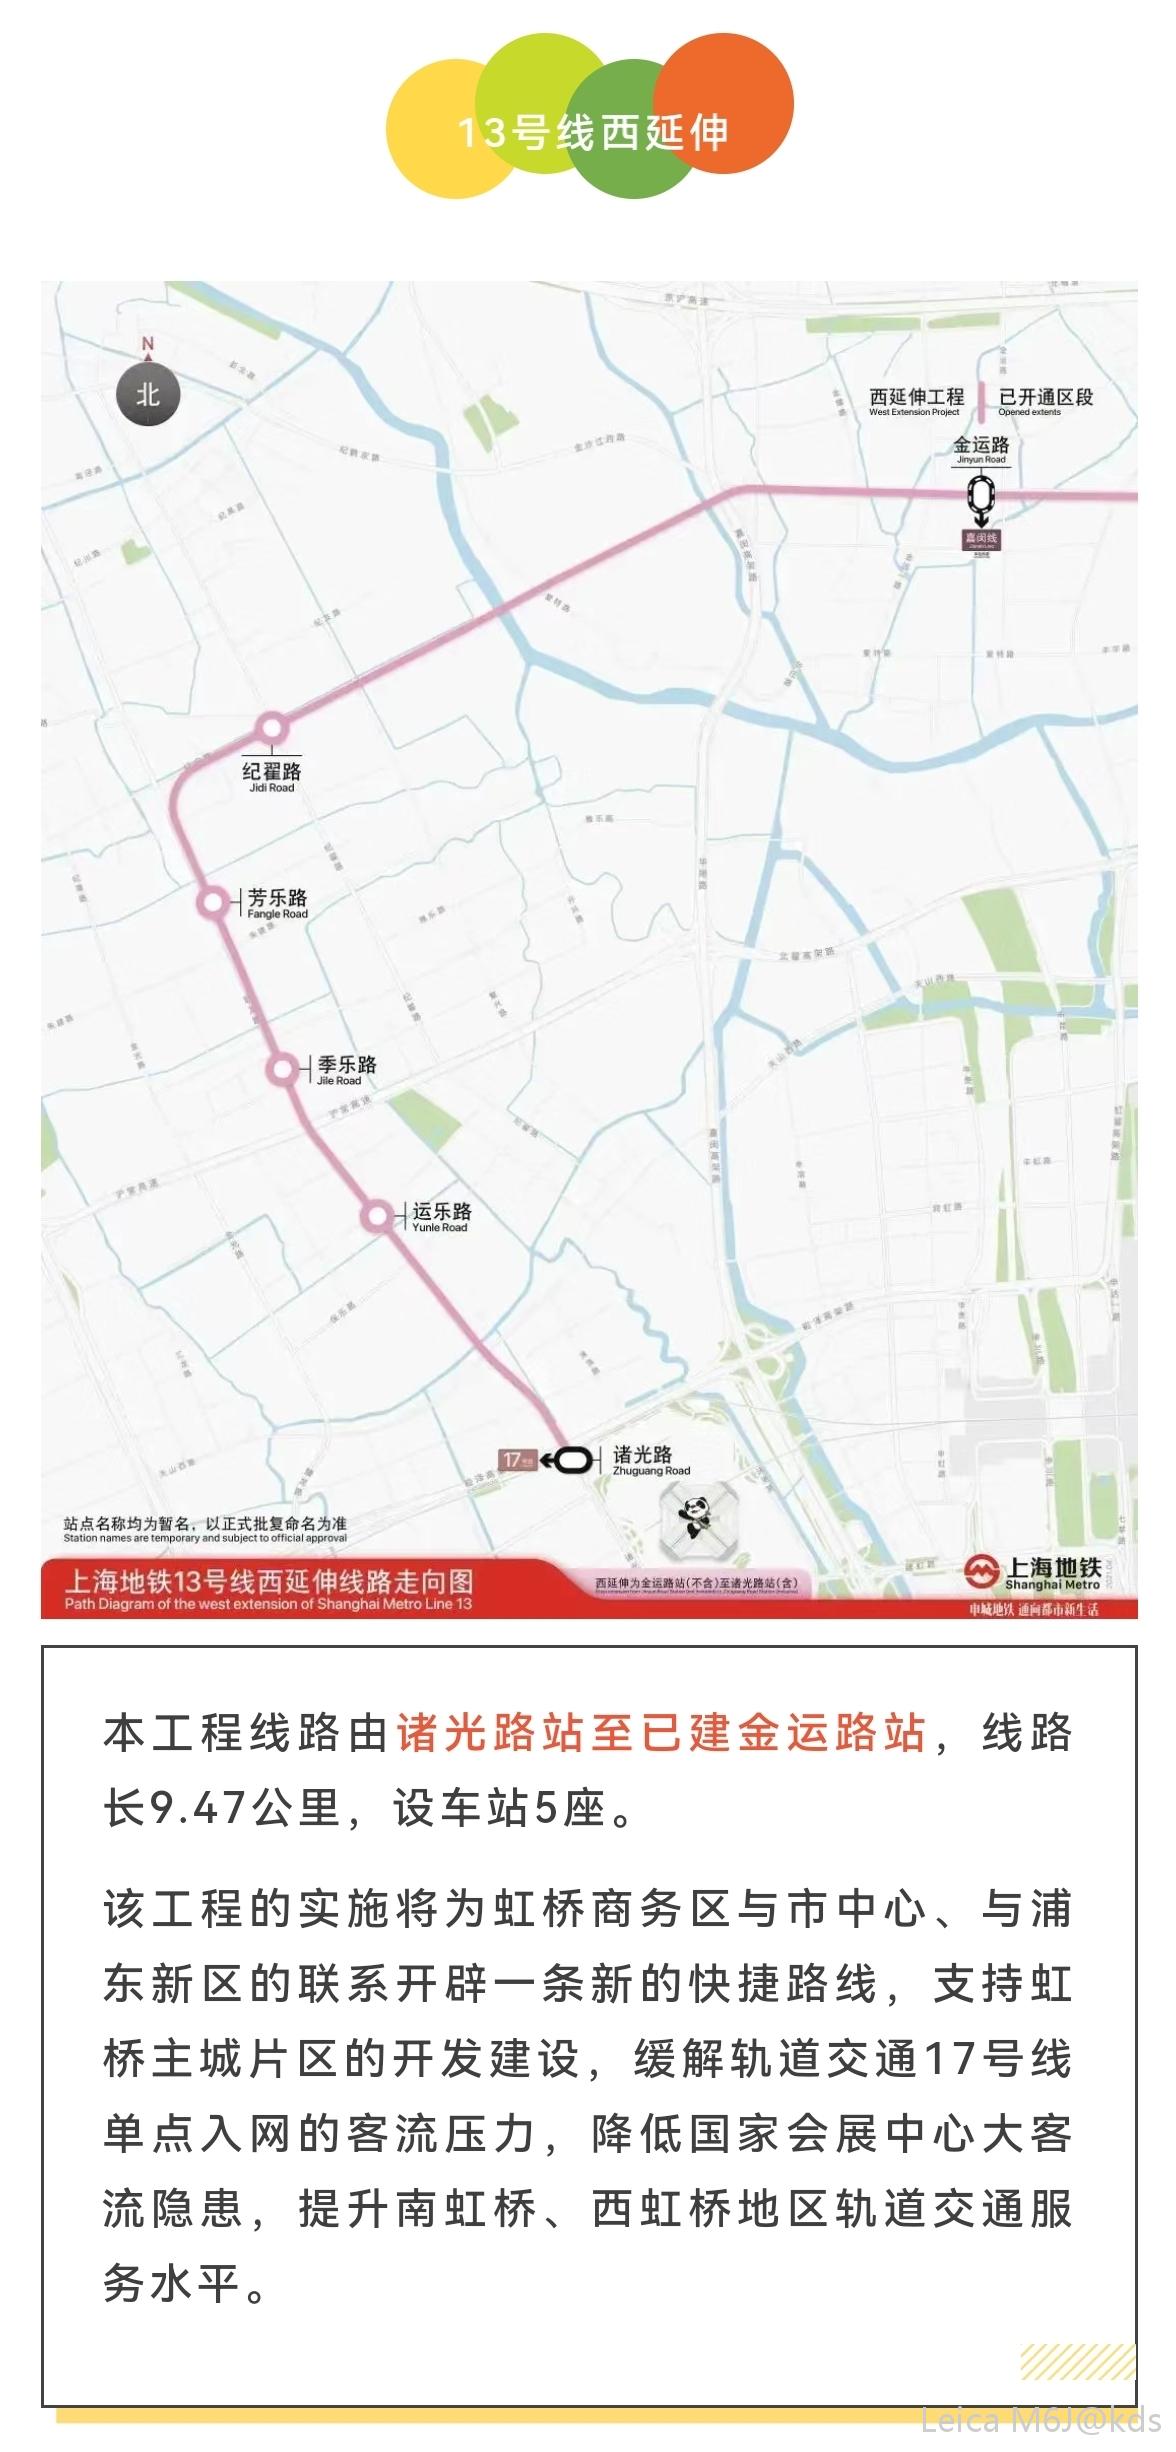 支持青浦发展上海地铁2号线13号线17号线进行向西延生段建设